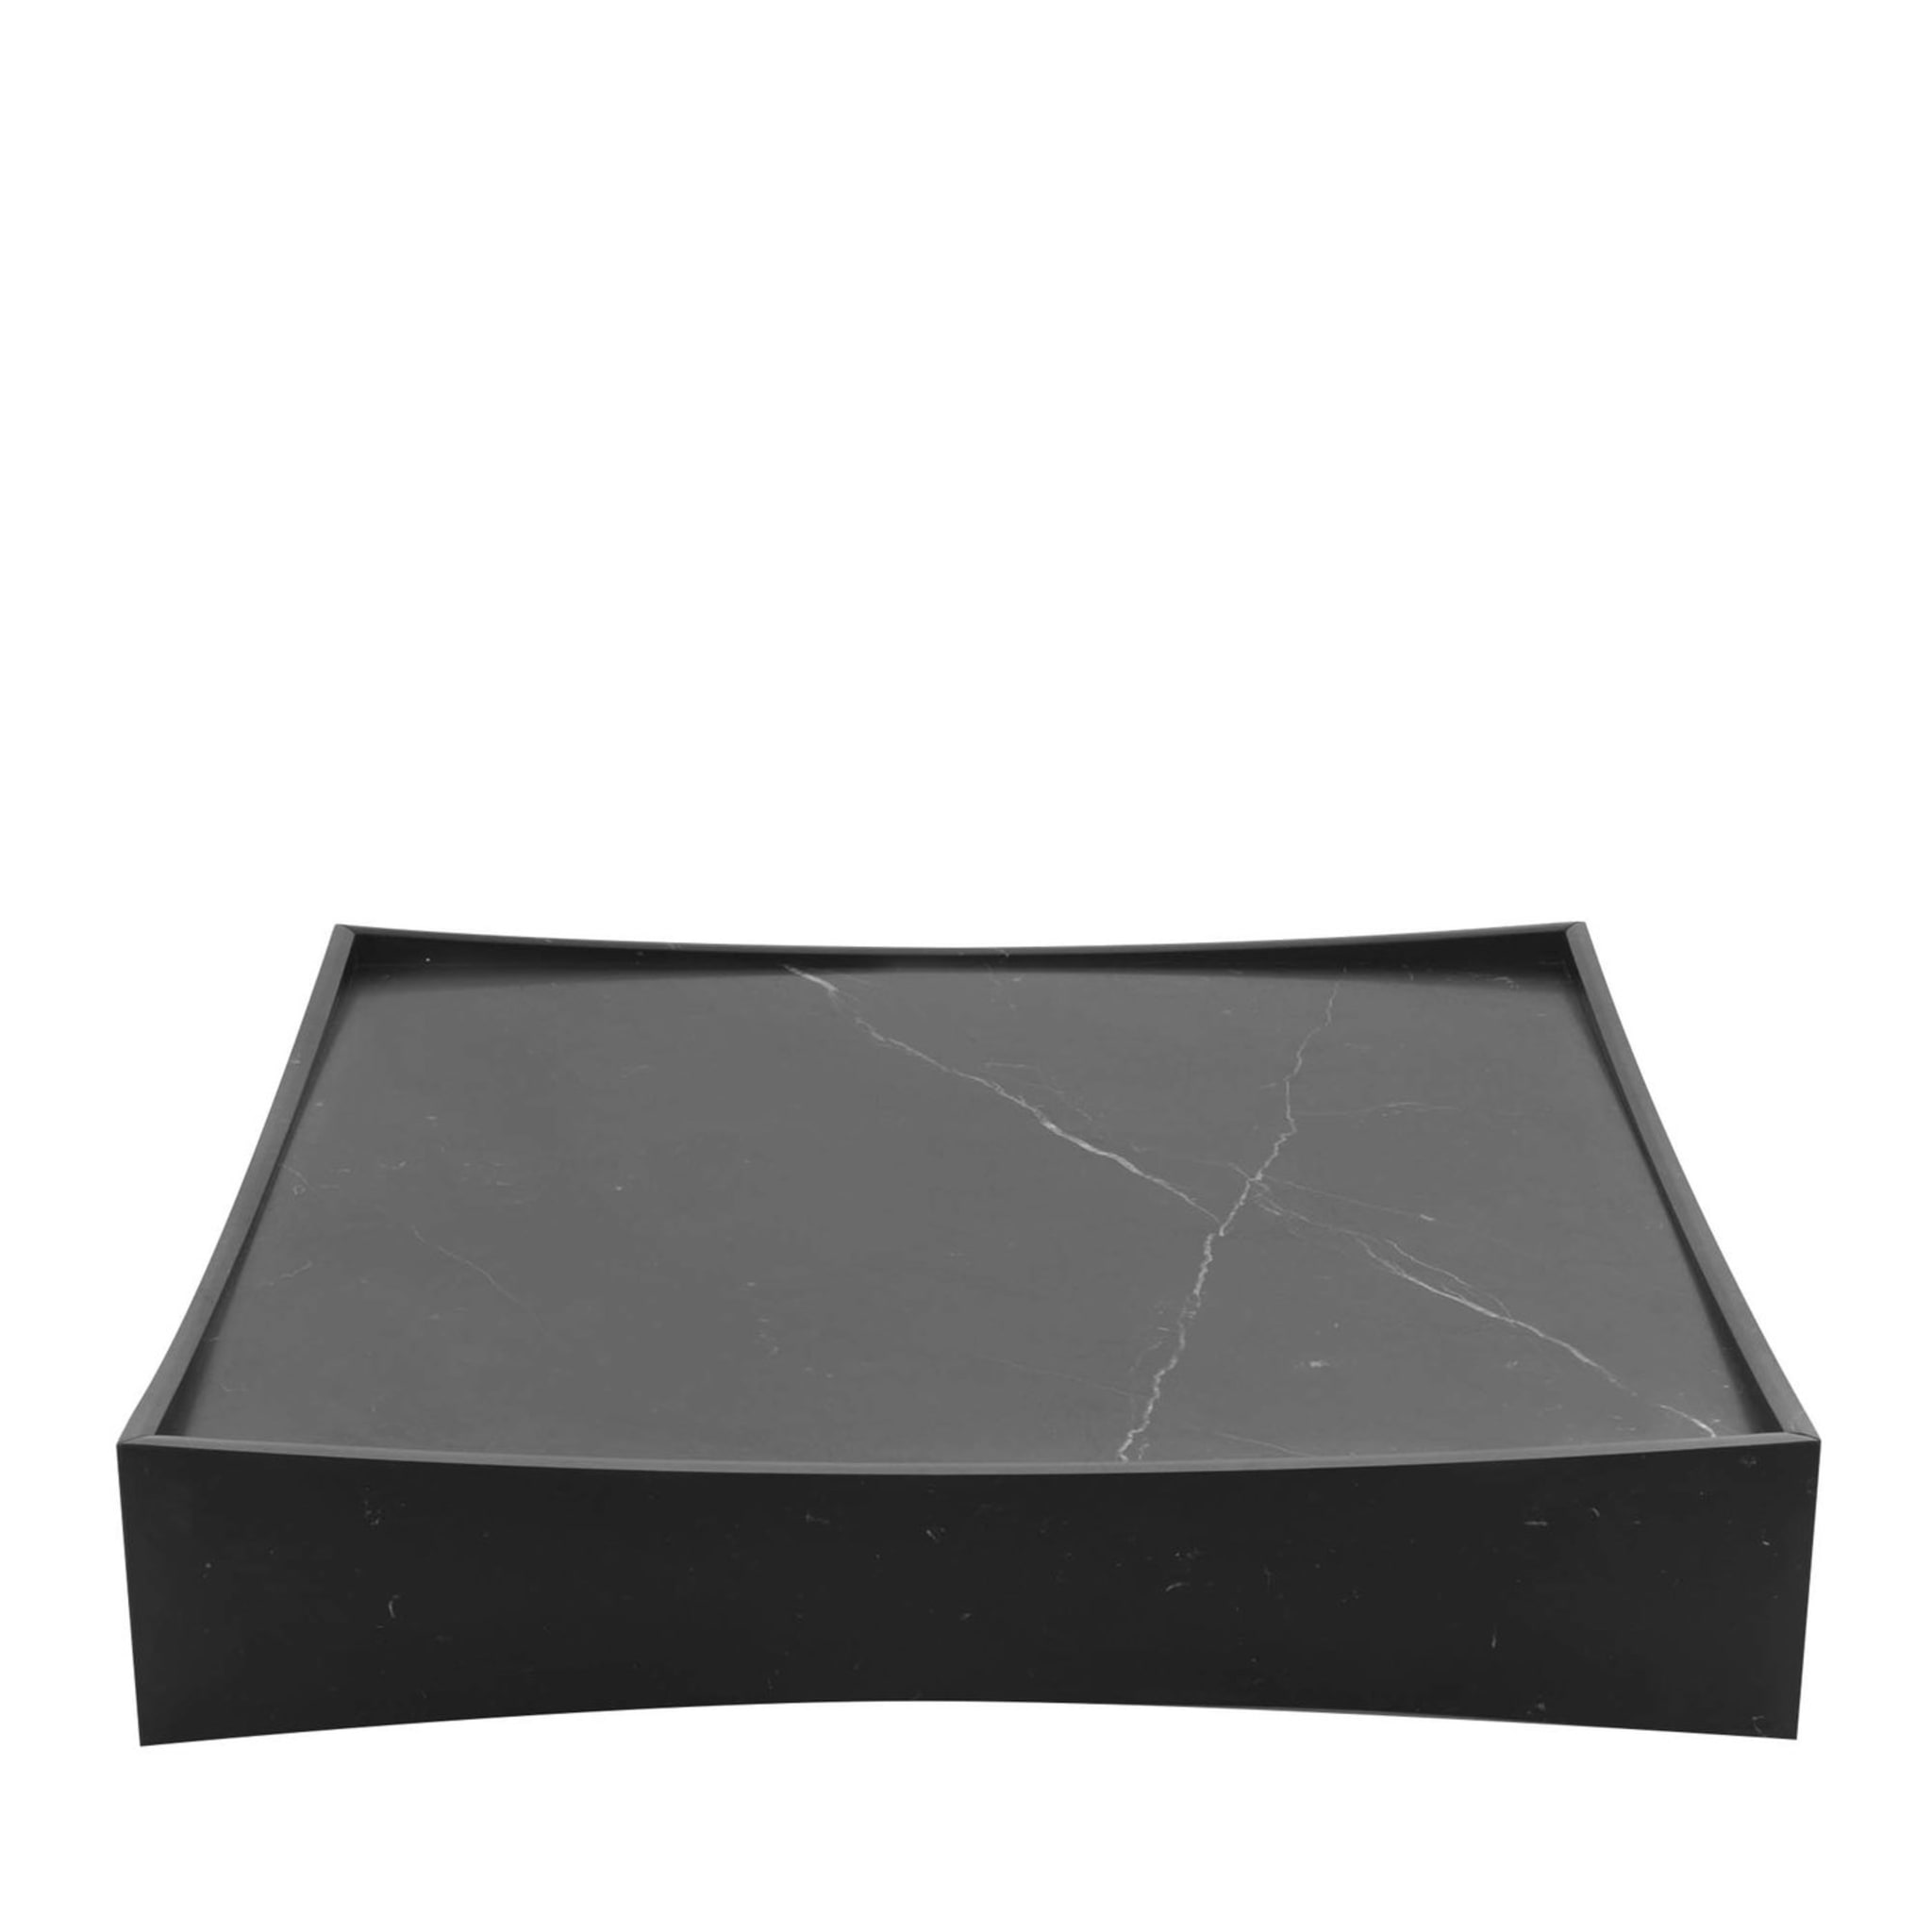 Black GALLERY LOW TABLE - Design Claesson Koivisto Rune 2011 - Main view